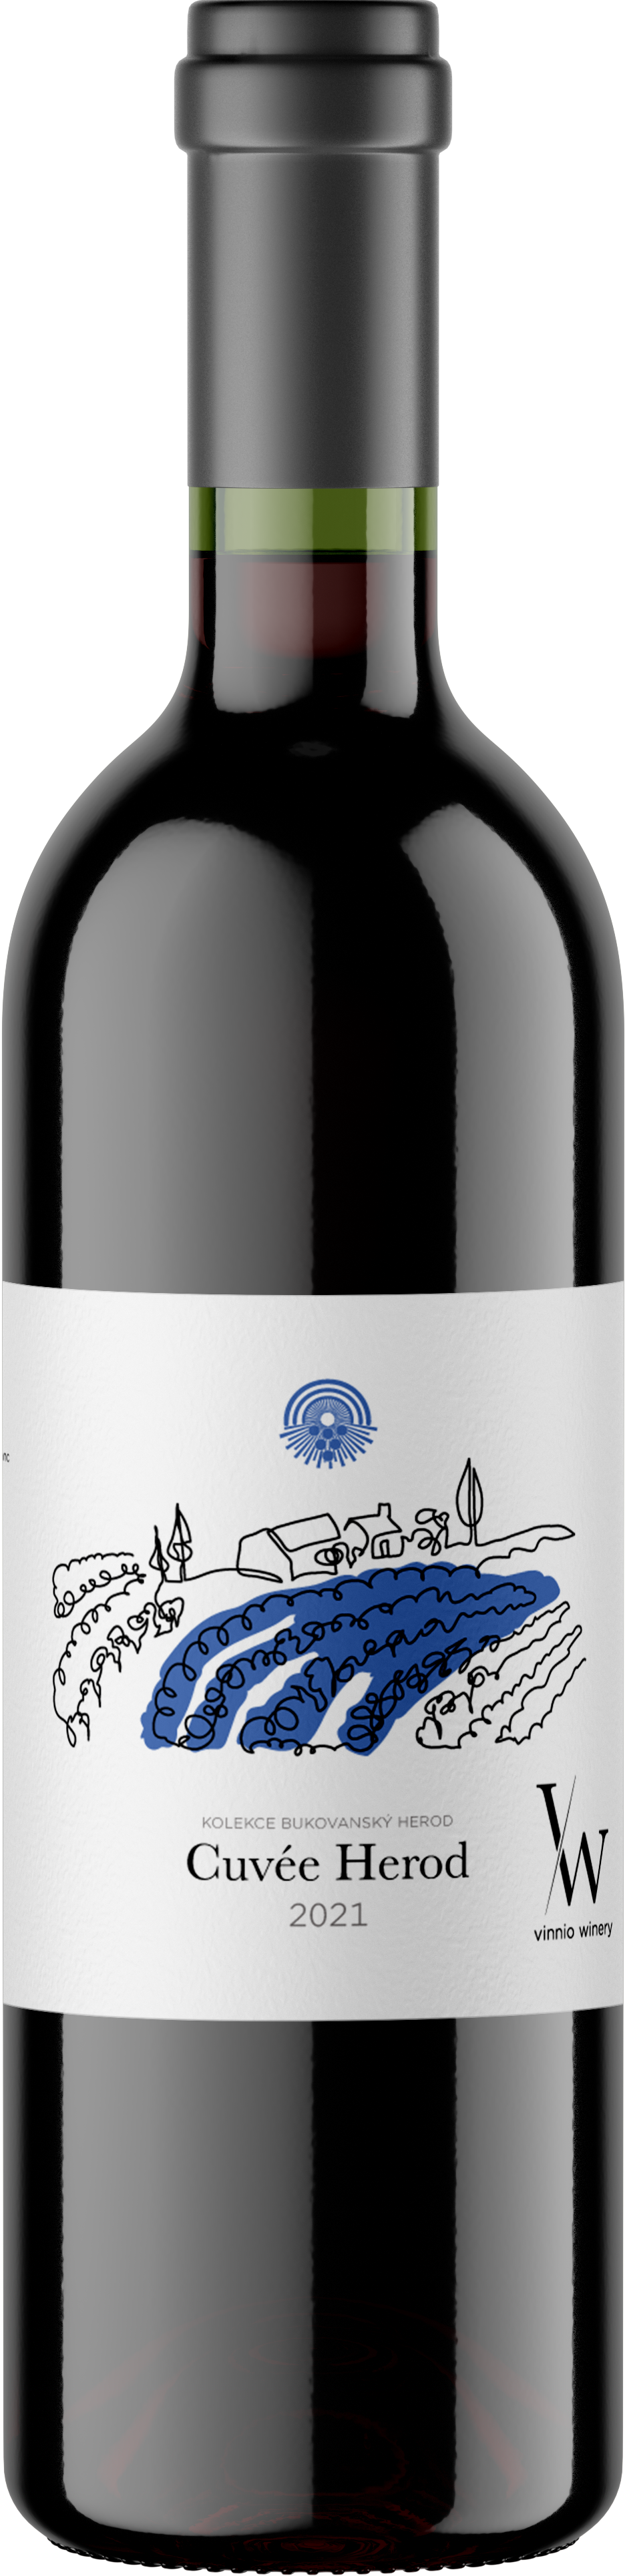 Vinnio Winery - Cuvée Herod 2021